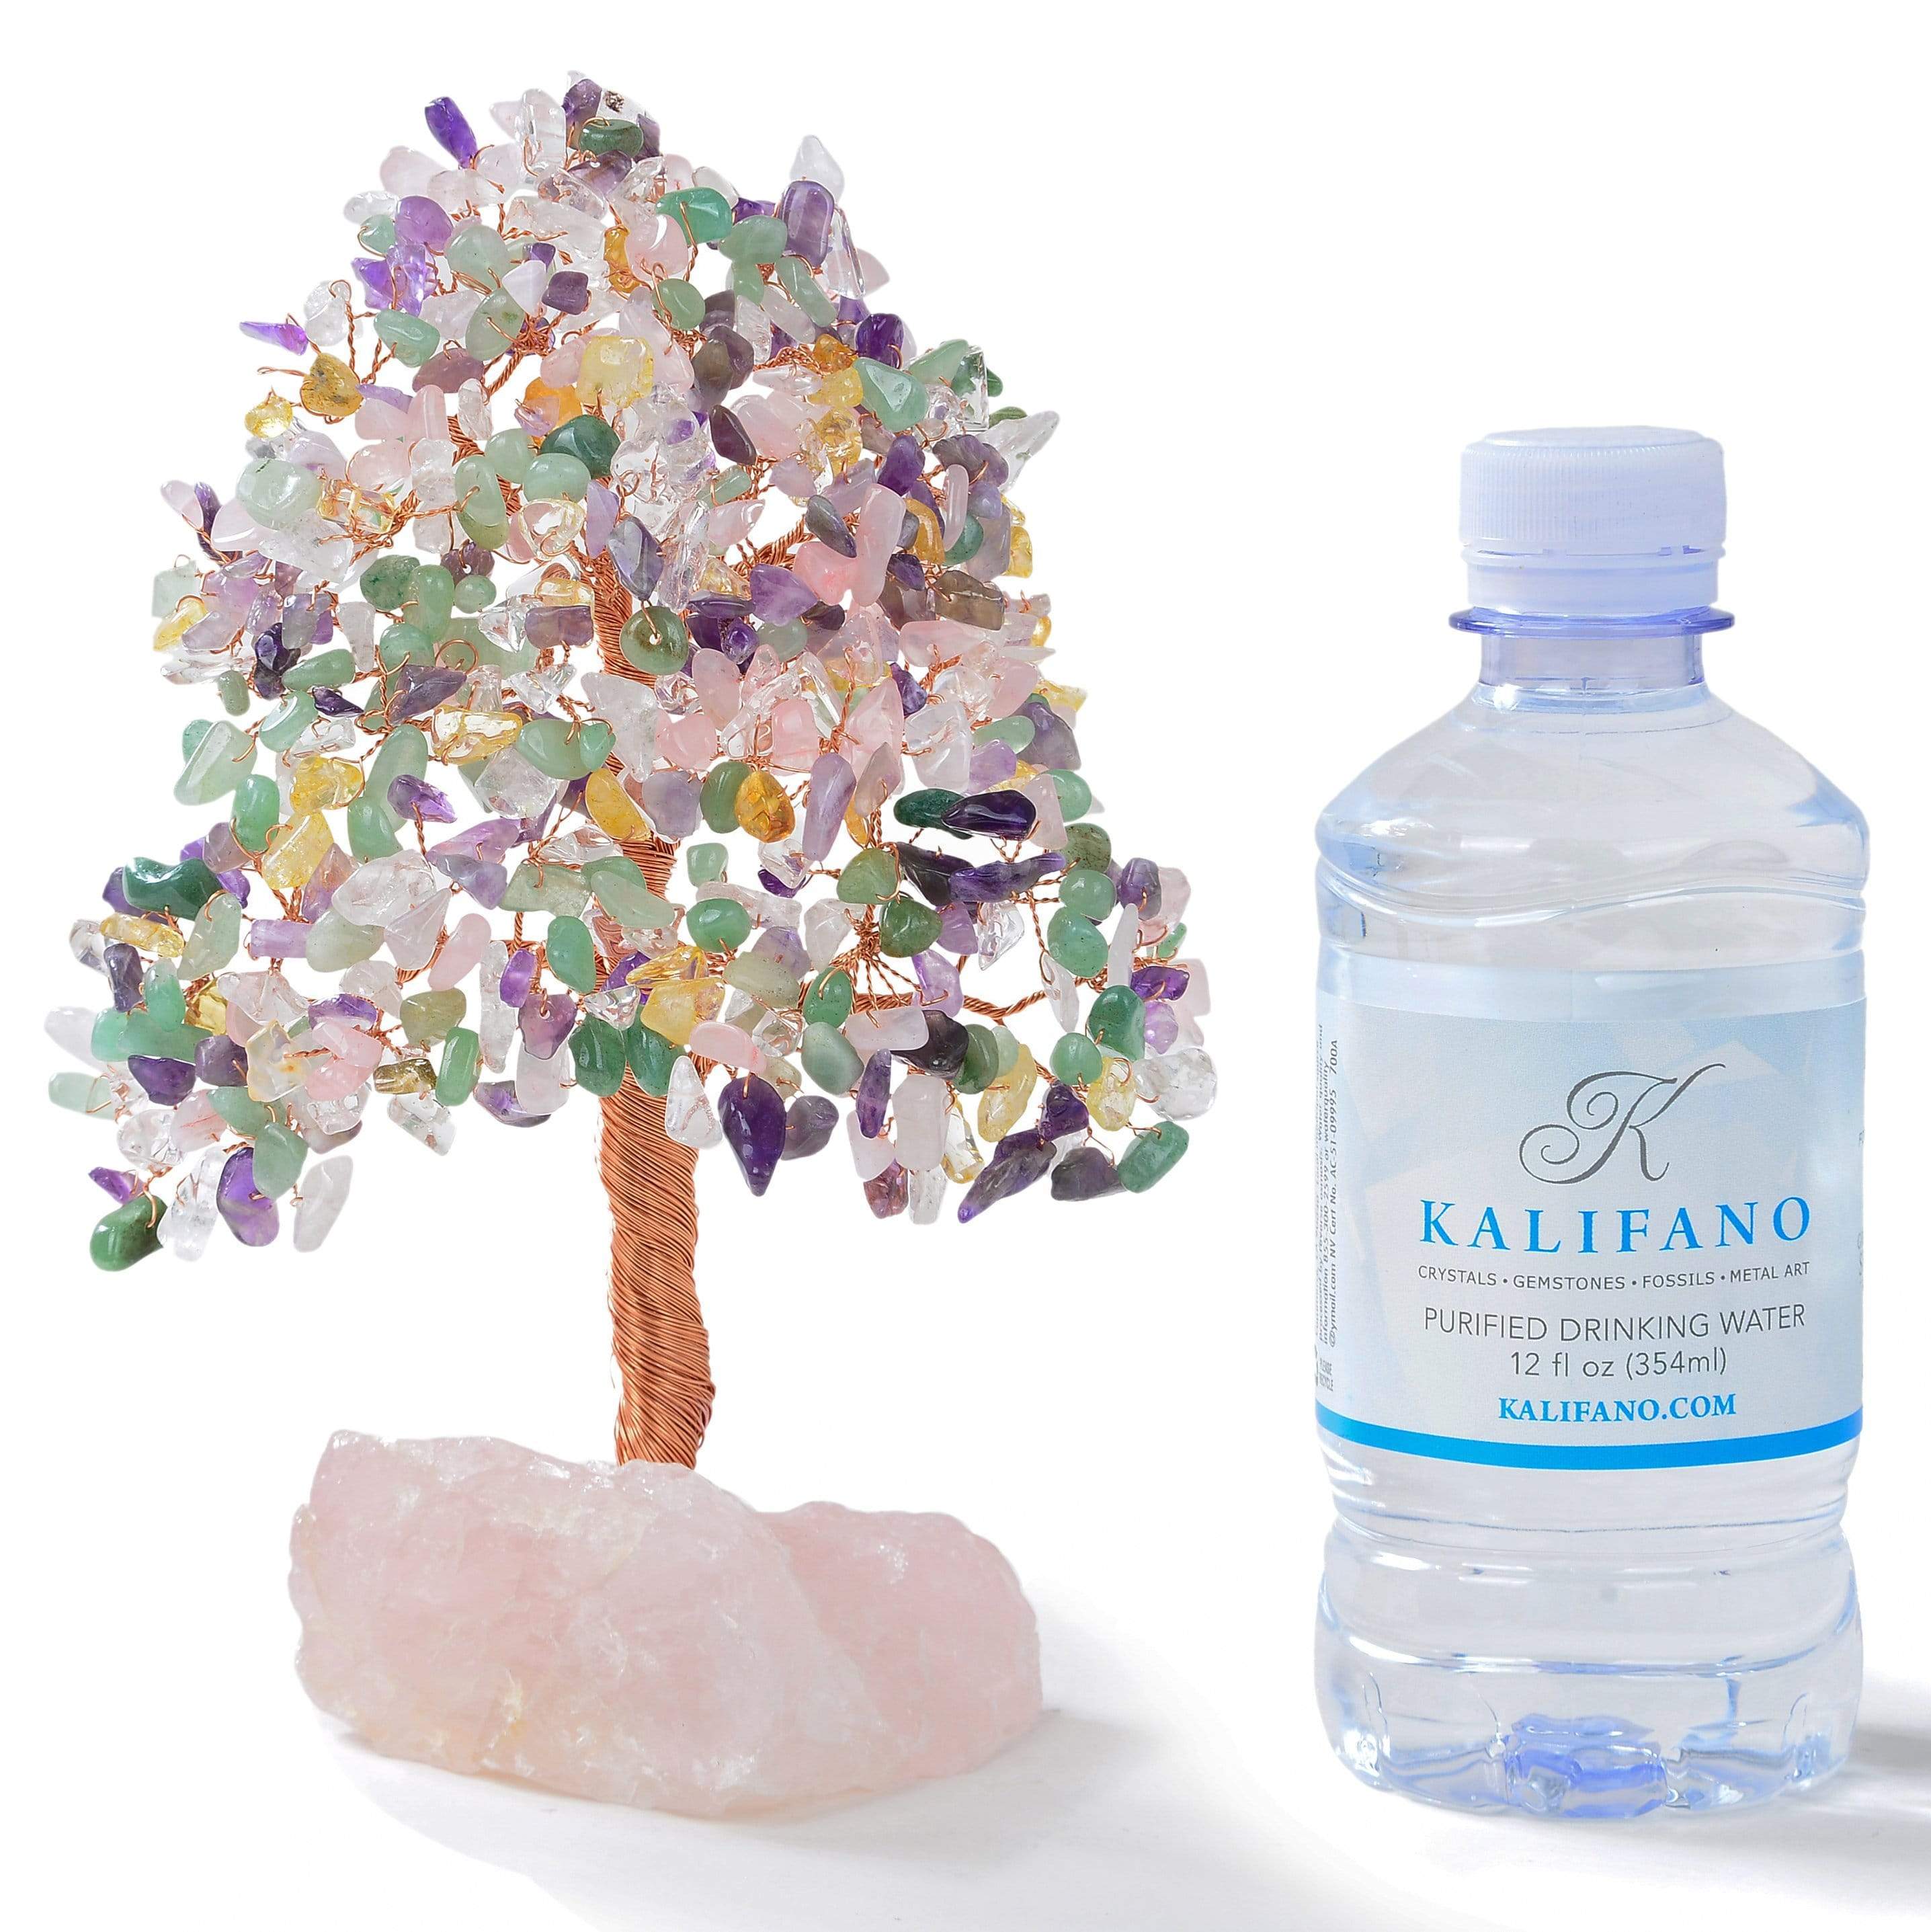 Kalifano Gemstone Trees Multi-Gemstone Tree of Life on Rose Quartz Base with 414 Natural Stones K965R-MT